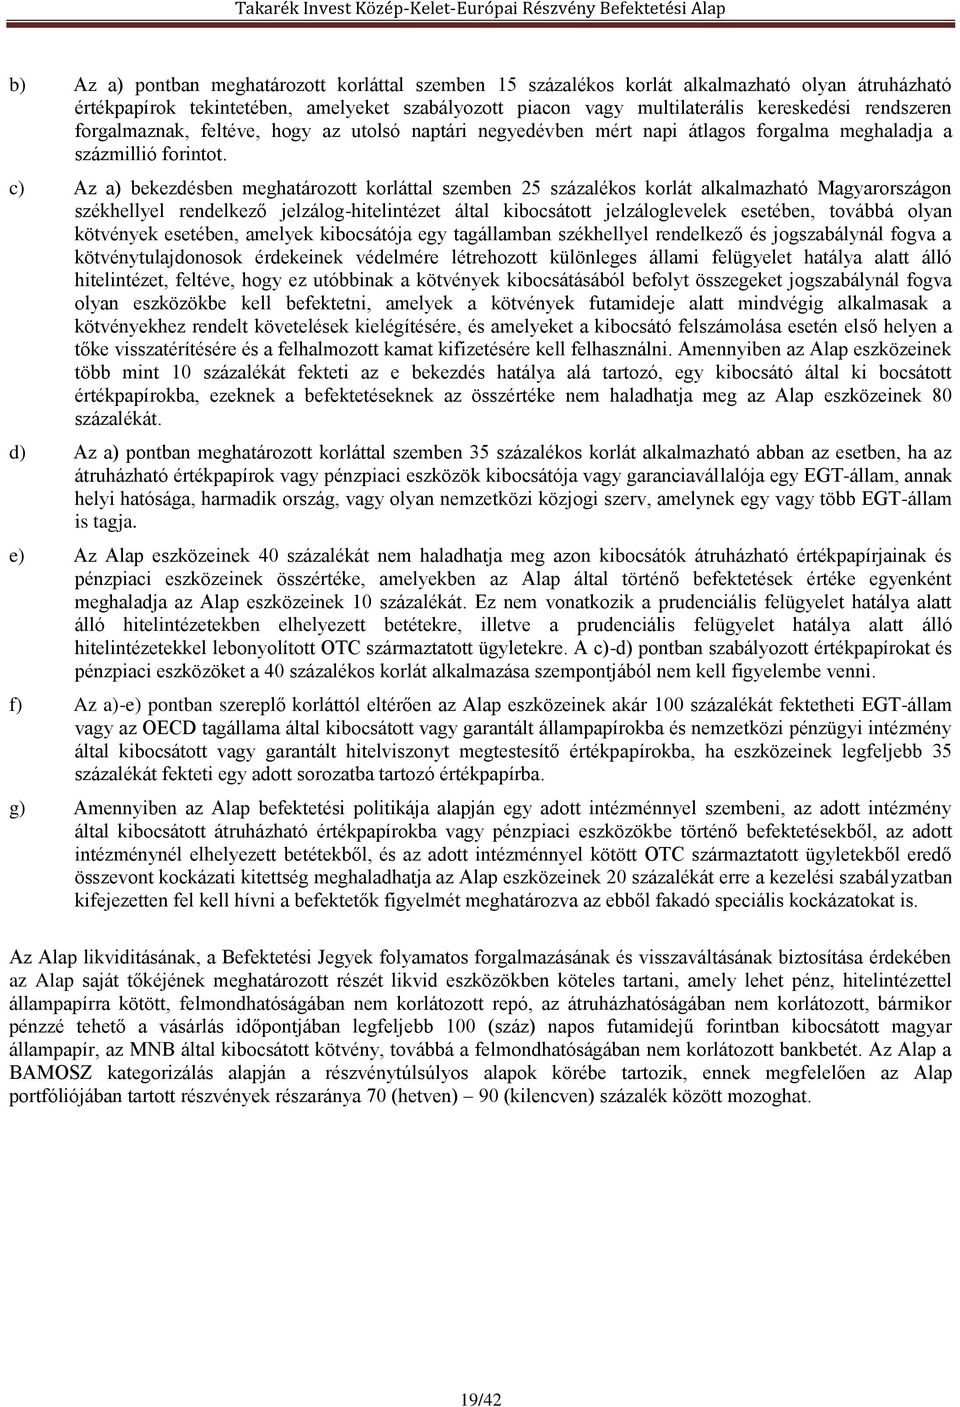 c) Az a) bekezdésben meghatározott korláttal szemben 25 százalékos korlát alkalmazható Magyarországon székhellyel rendelkező jelzálog-hitelintézet által kibocsátott jelzáloglevelek esetében, továbbá